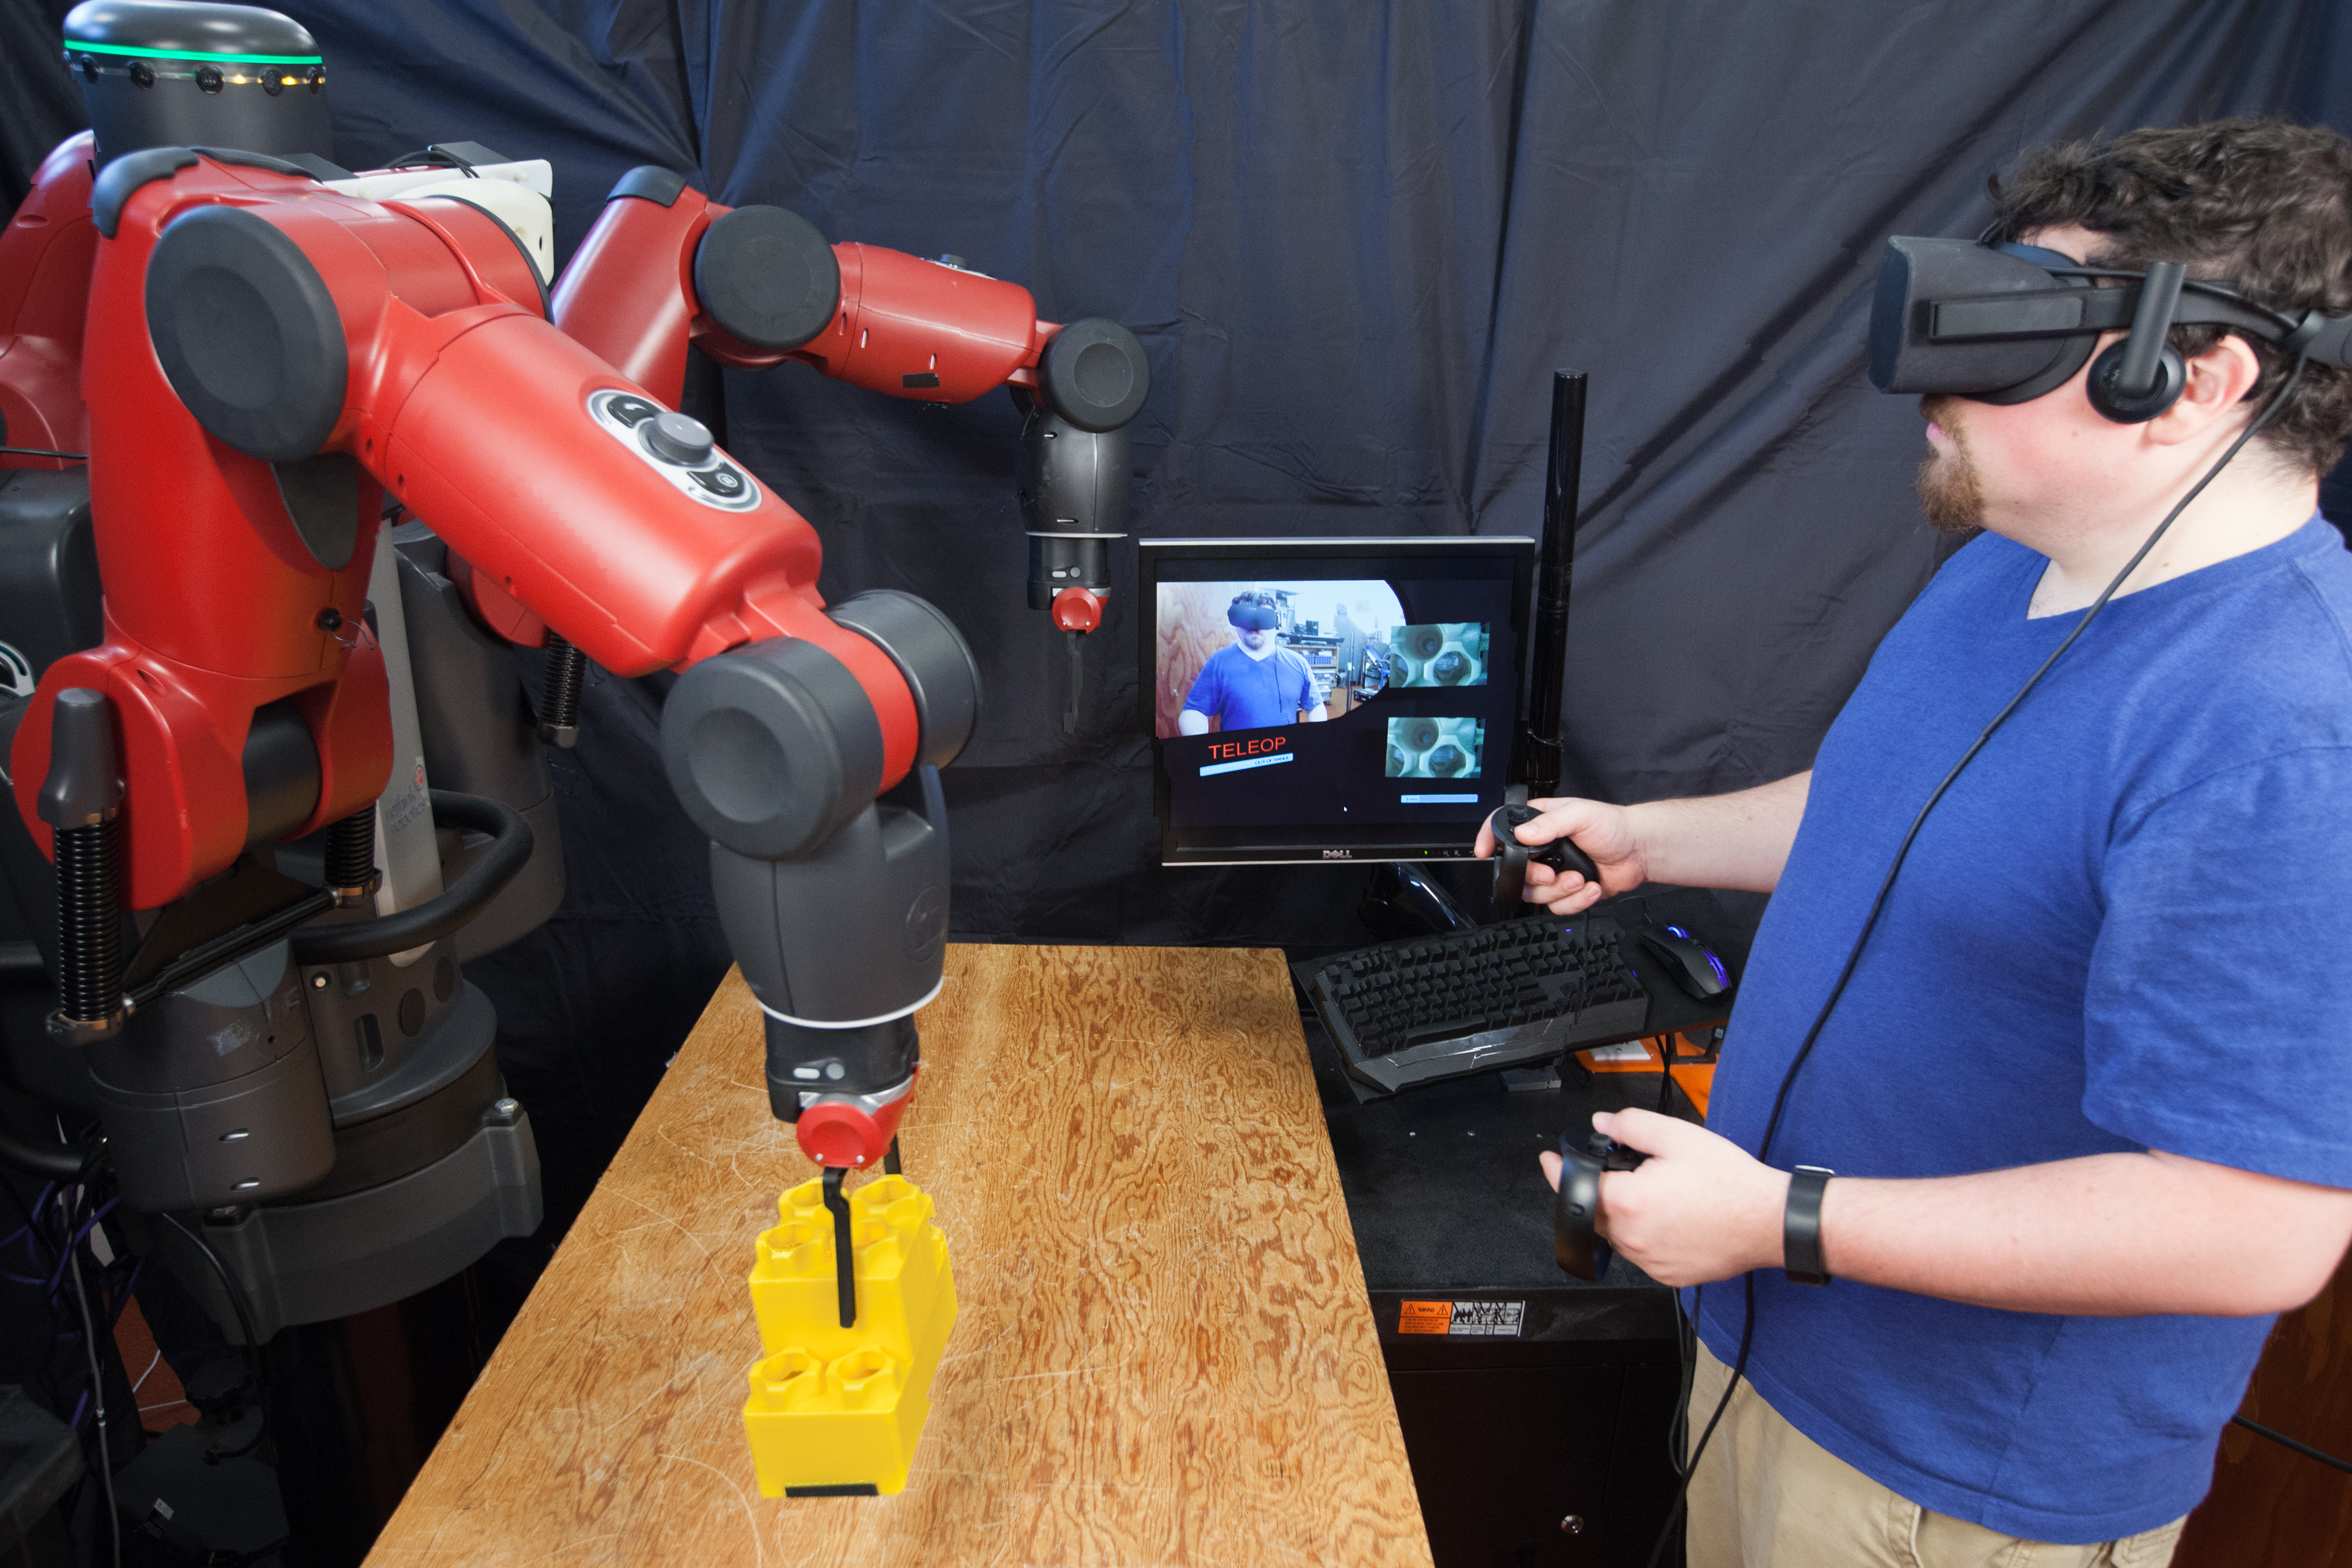 MIT's remote control robot system puts VR to work - TechCrunch